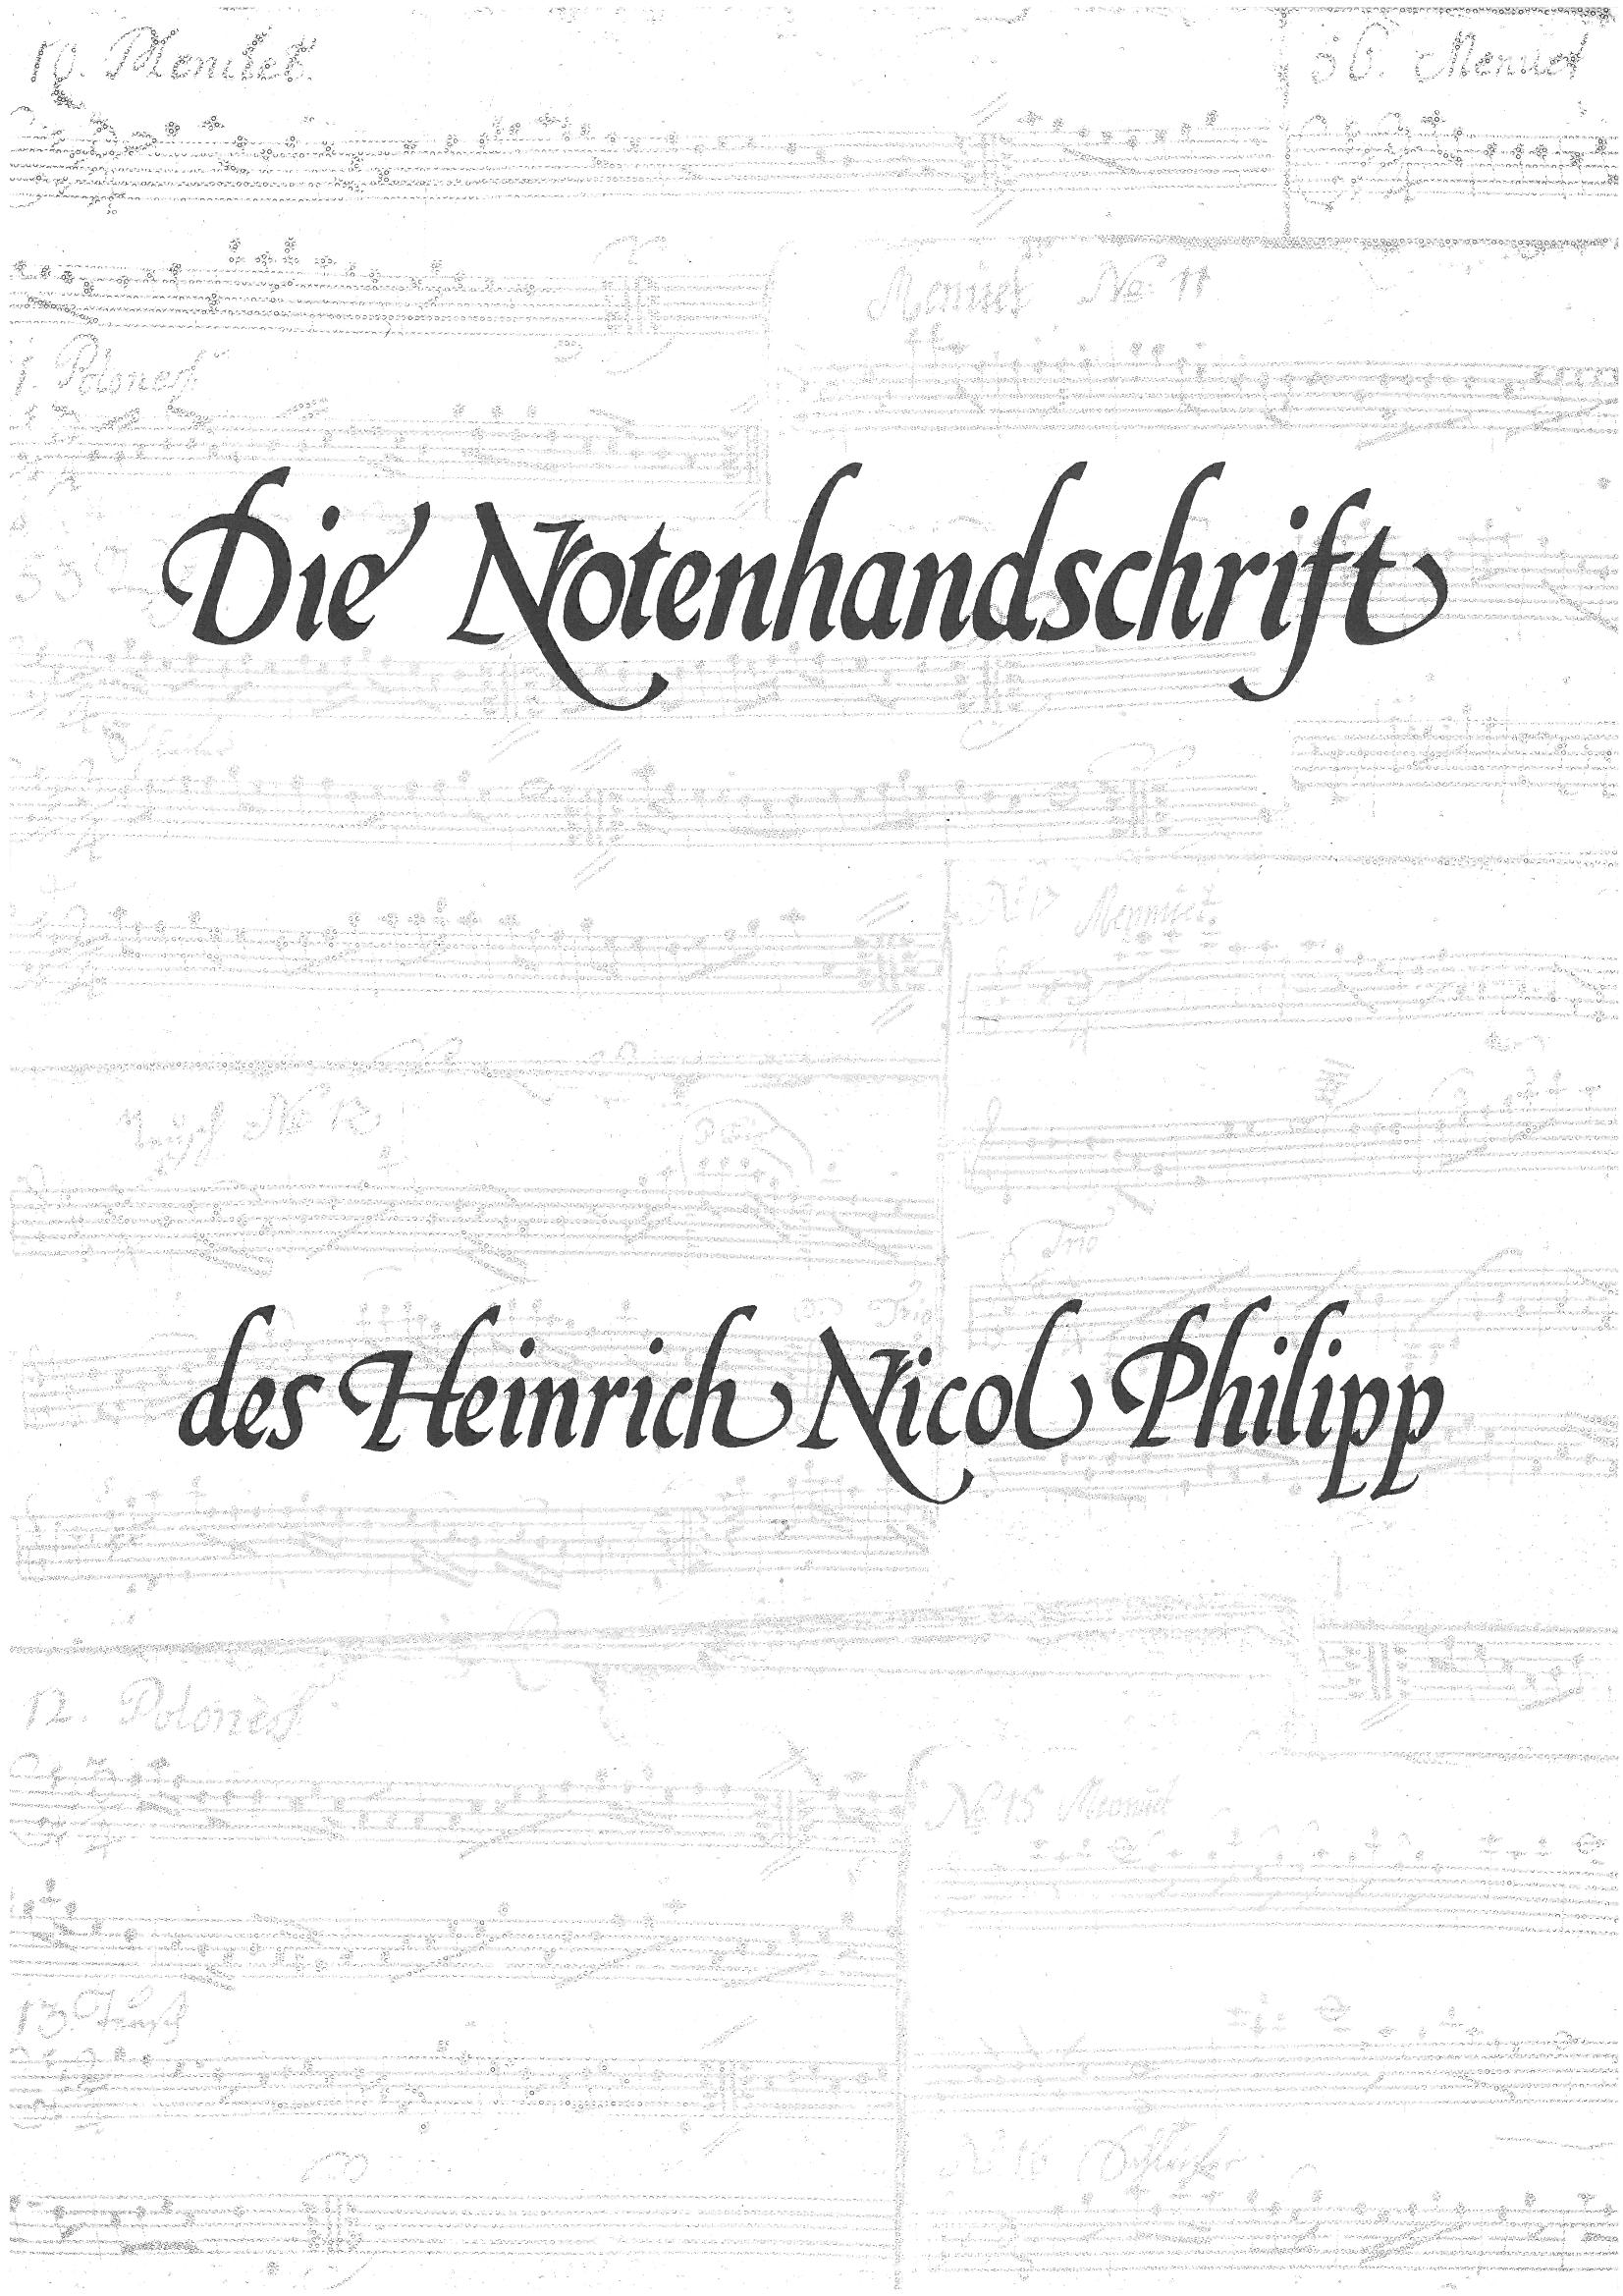 Die Notenhandschrift des Heinrich Nicol Philipp